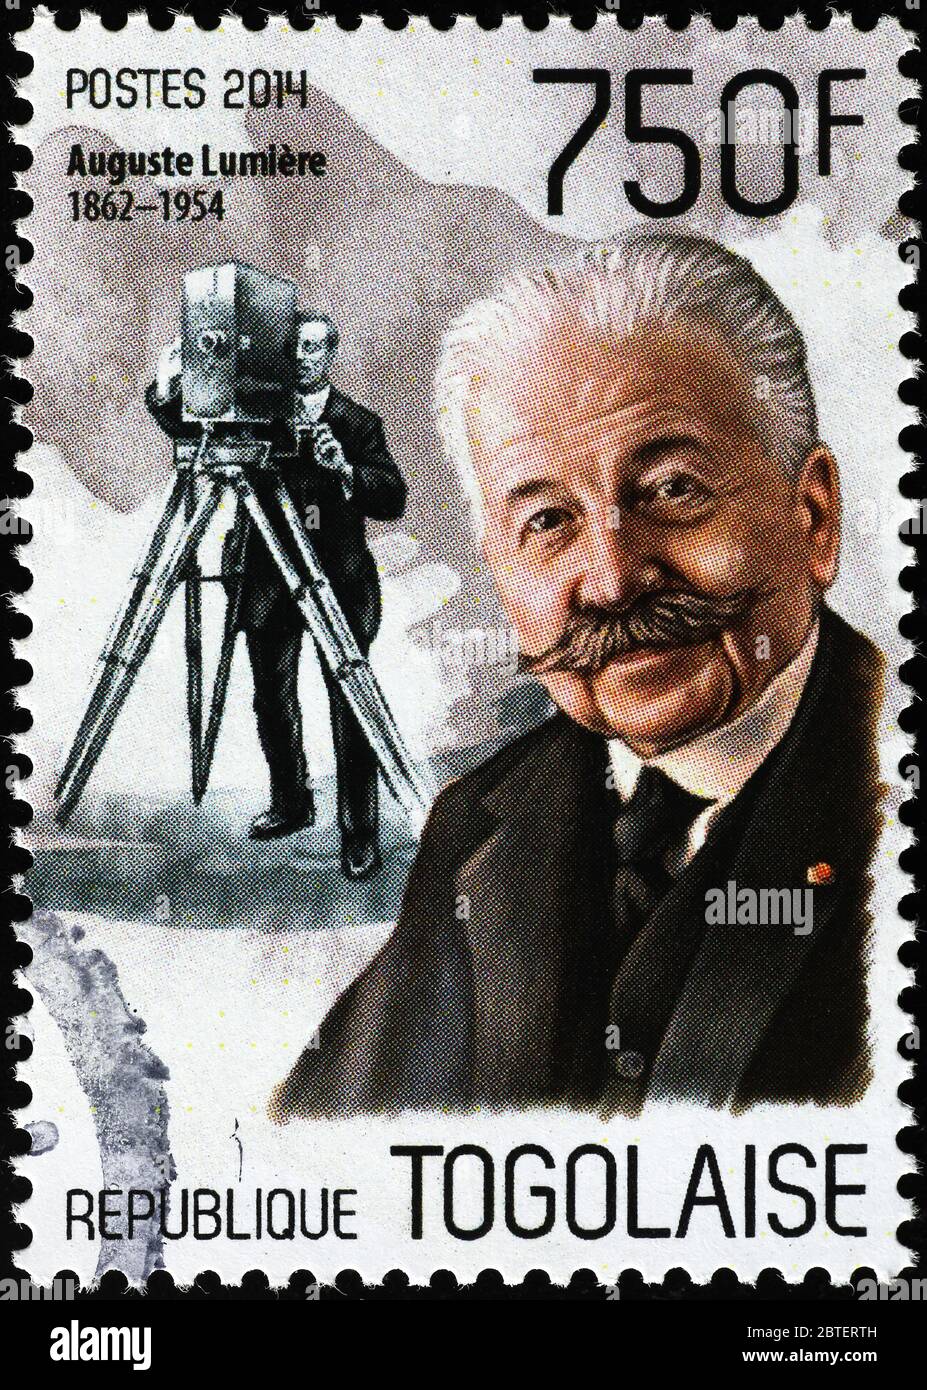 Portrait d'Auguste Lumiere sur timbre-poste du Togo Banque D'Images